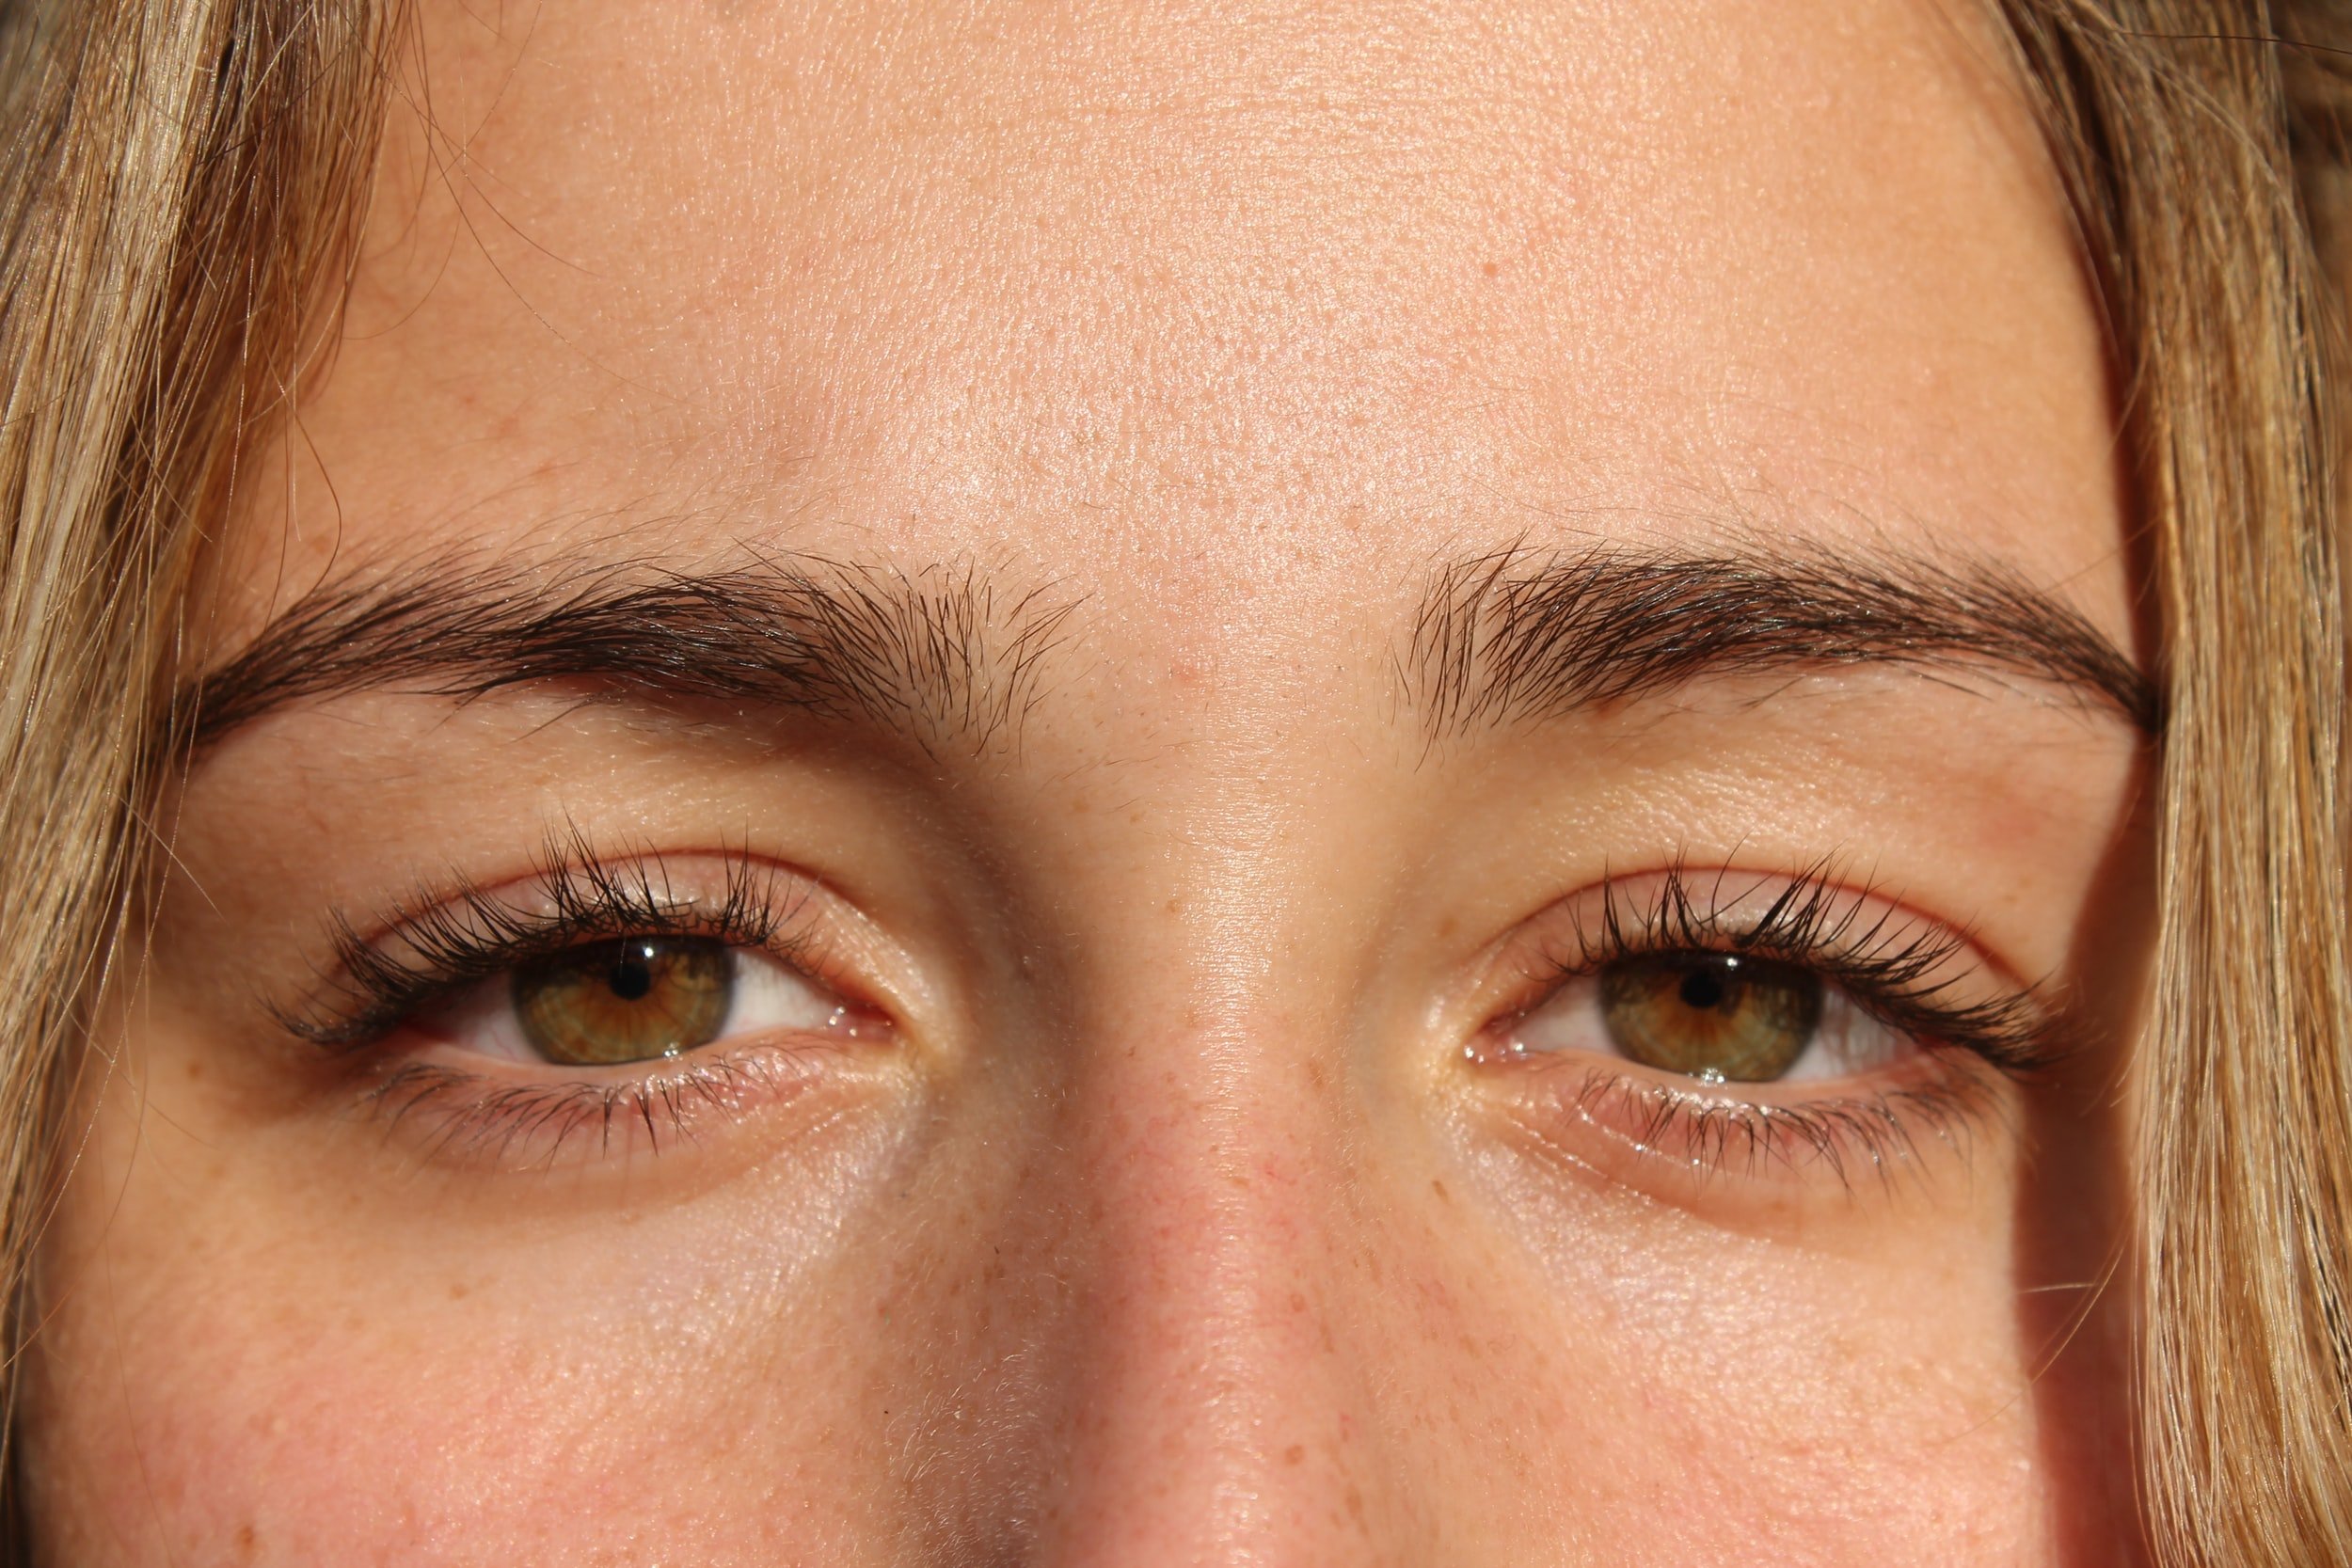 How do you heal dry eyes?, Florida Eye Care Tips, Florida